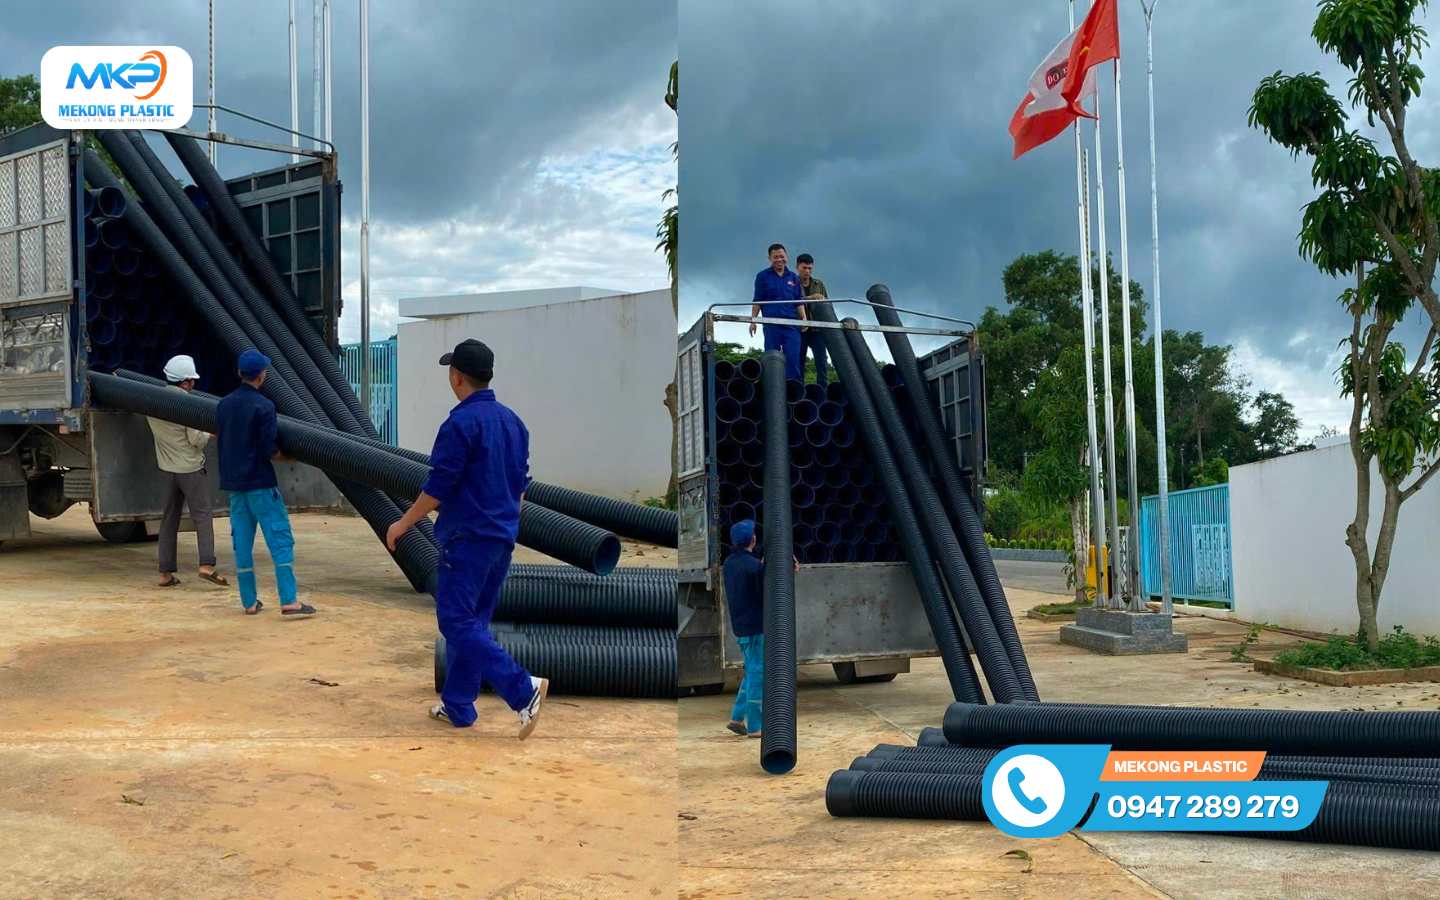 Mekong Plastic– Nhà cung cấp ống HDPE tại Lâm Đồng uy tín số 1